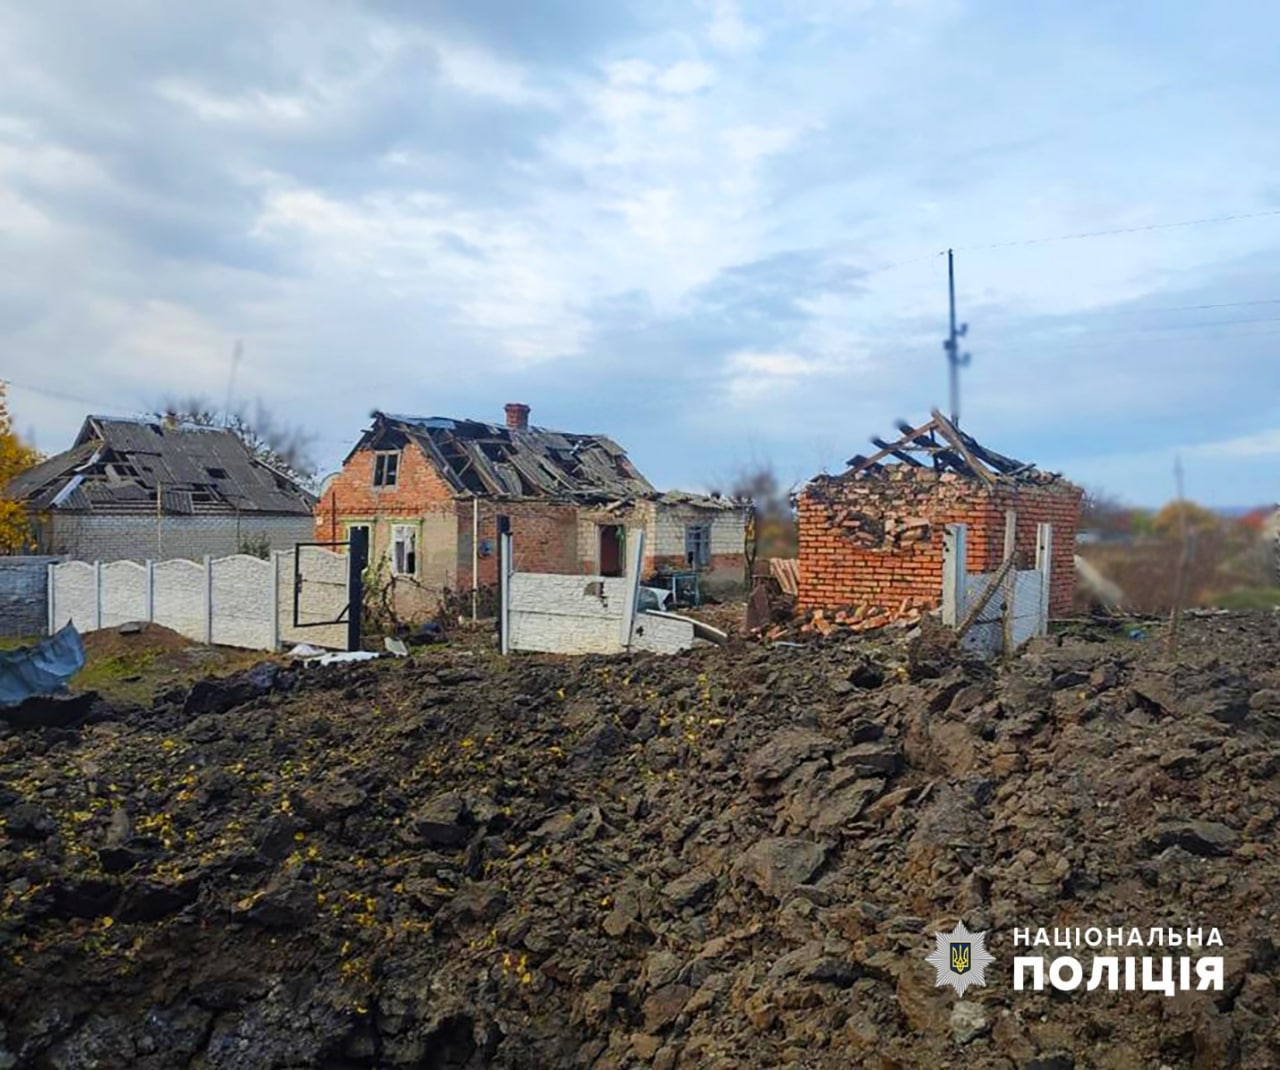 Запорожская область попала под огонь противника: какие населенные пункты пострадали